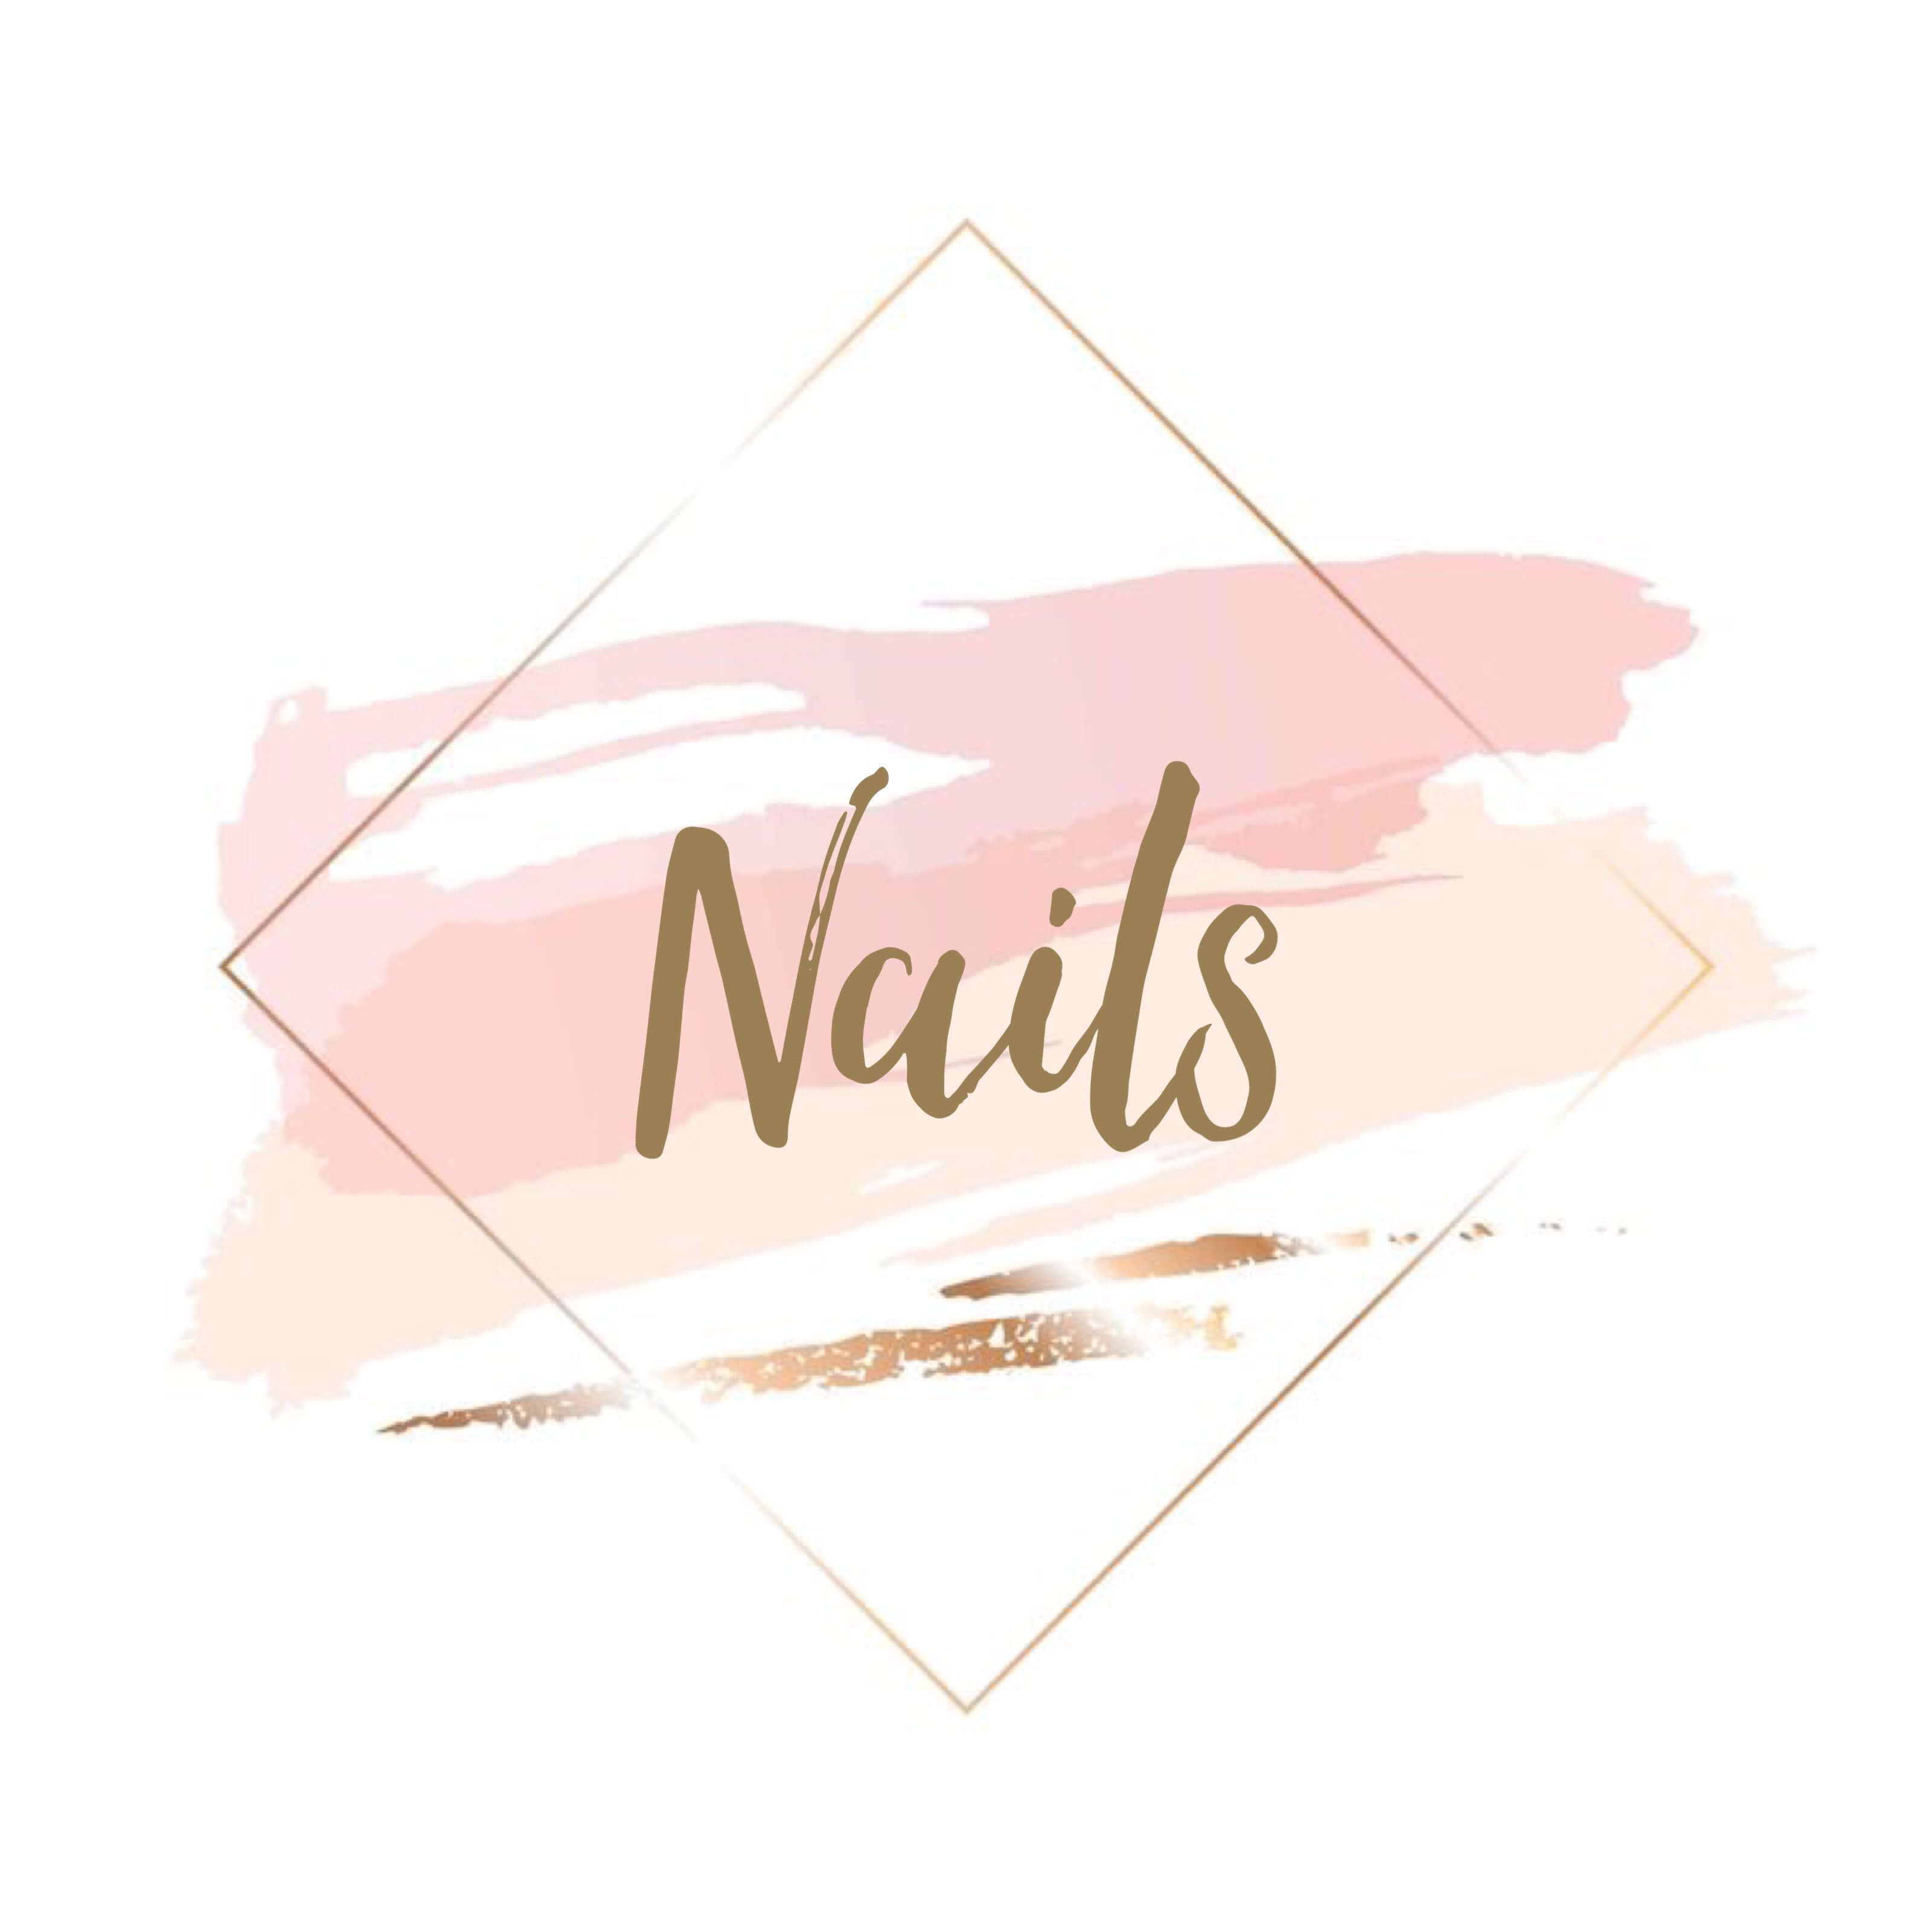 20+ mẫu thiết kế logo tiệm nail đẹp và chuyên nghiệp - Bee Design